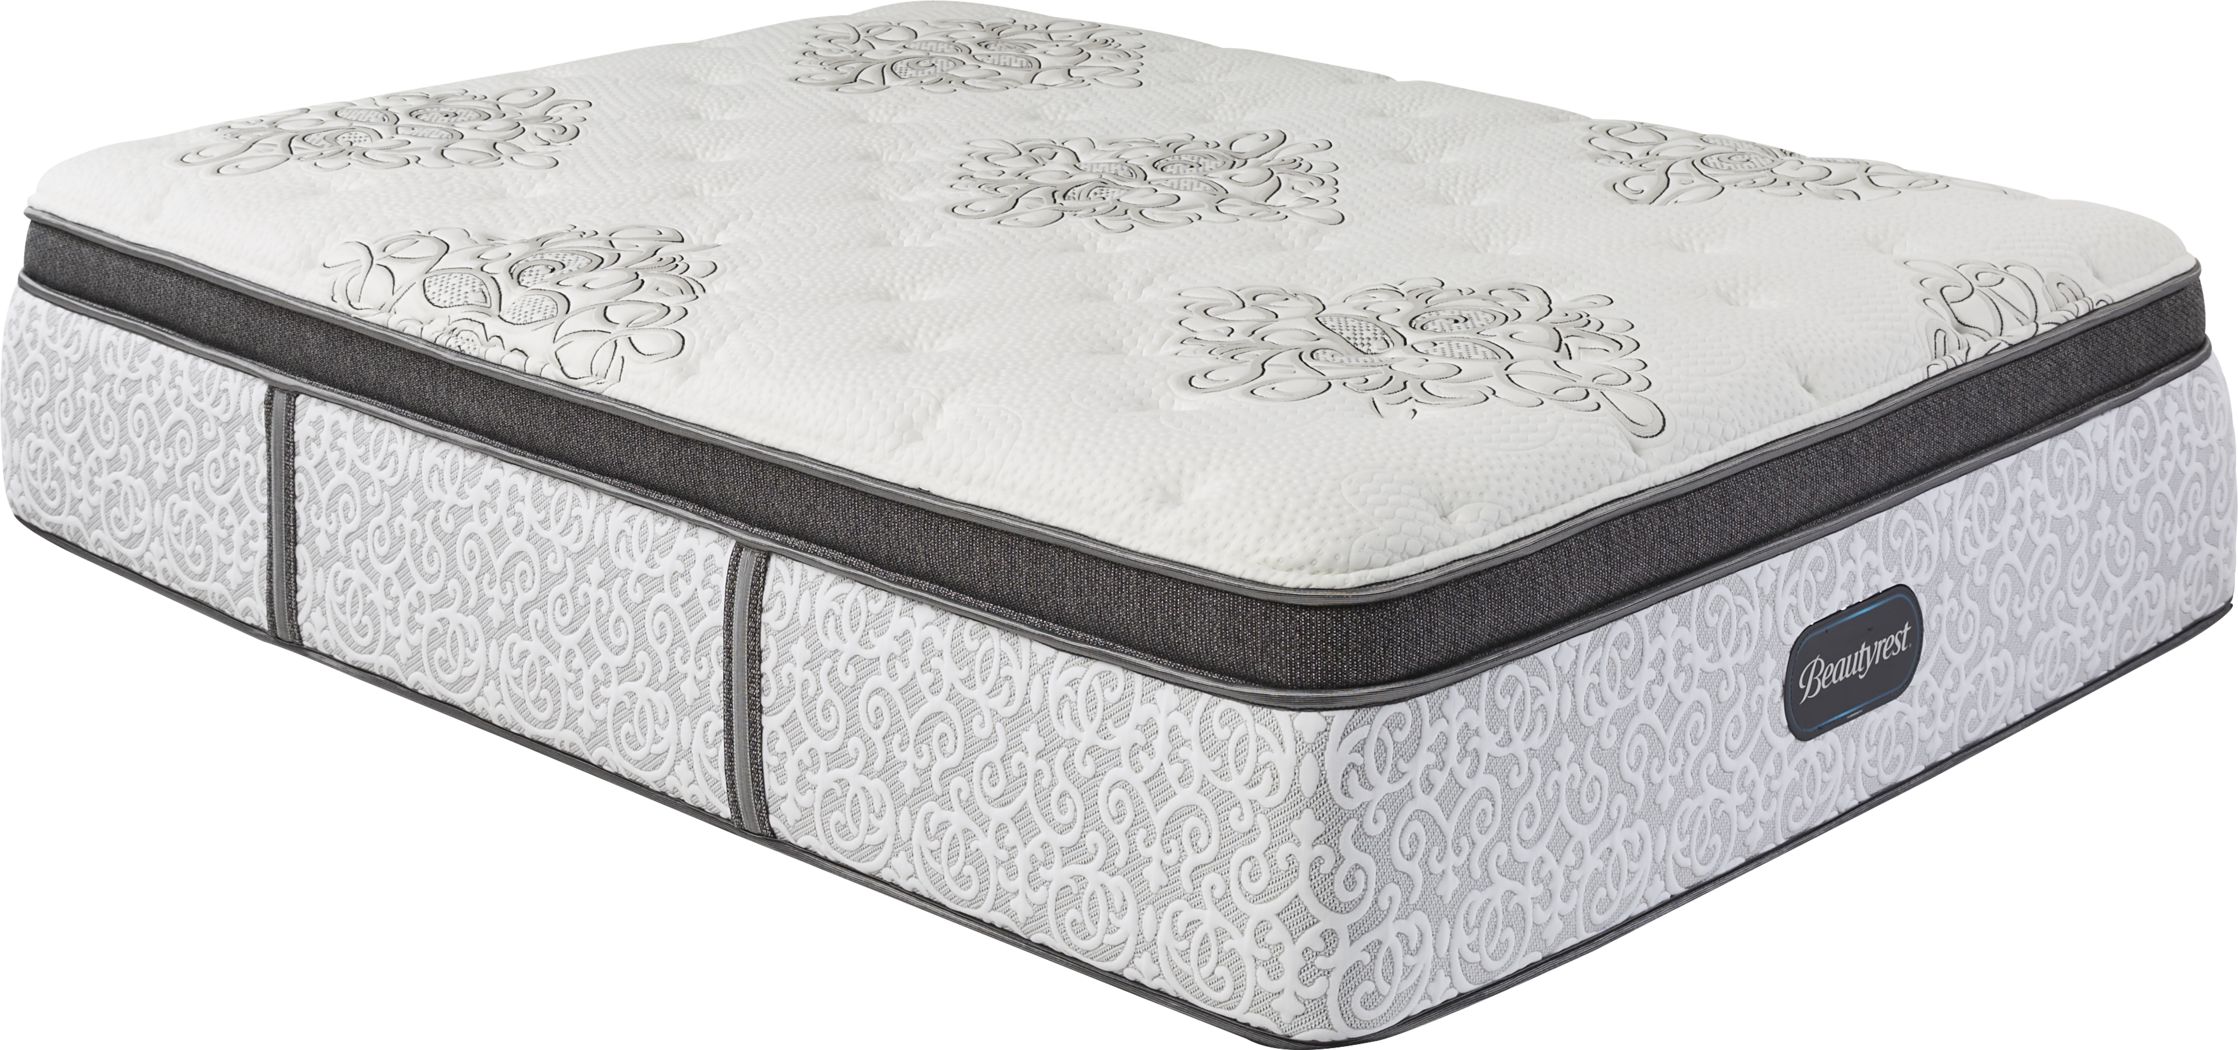 beautyrest legend pillow top mattress reviews